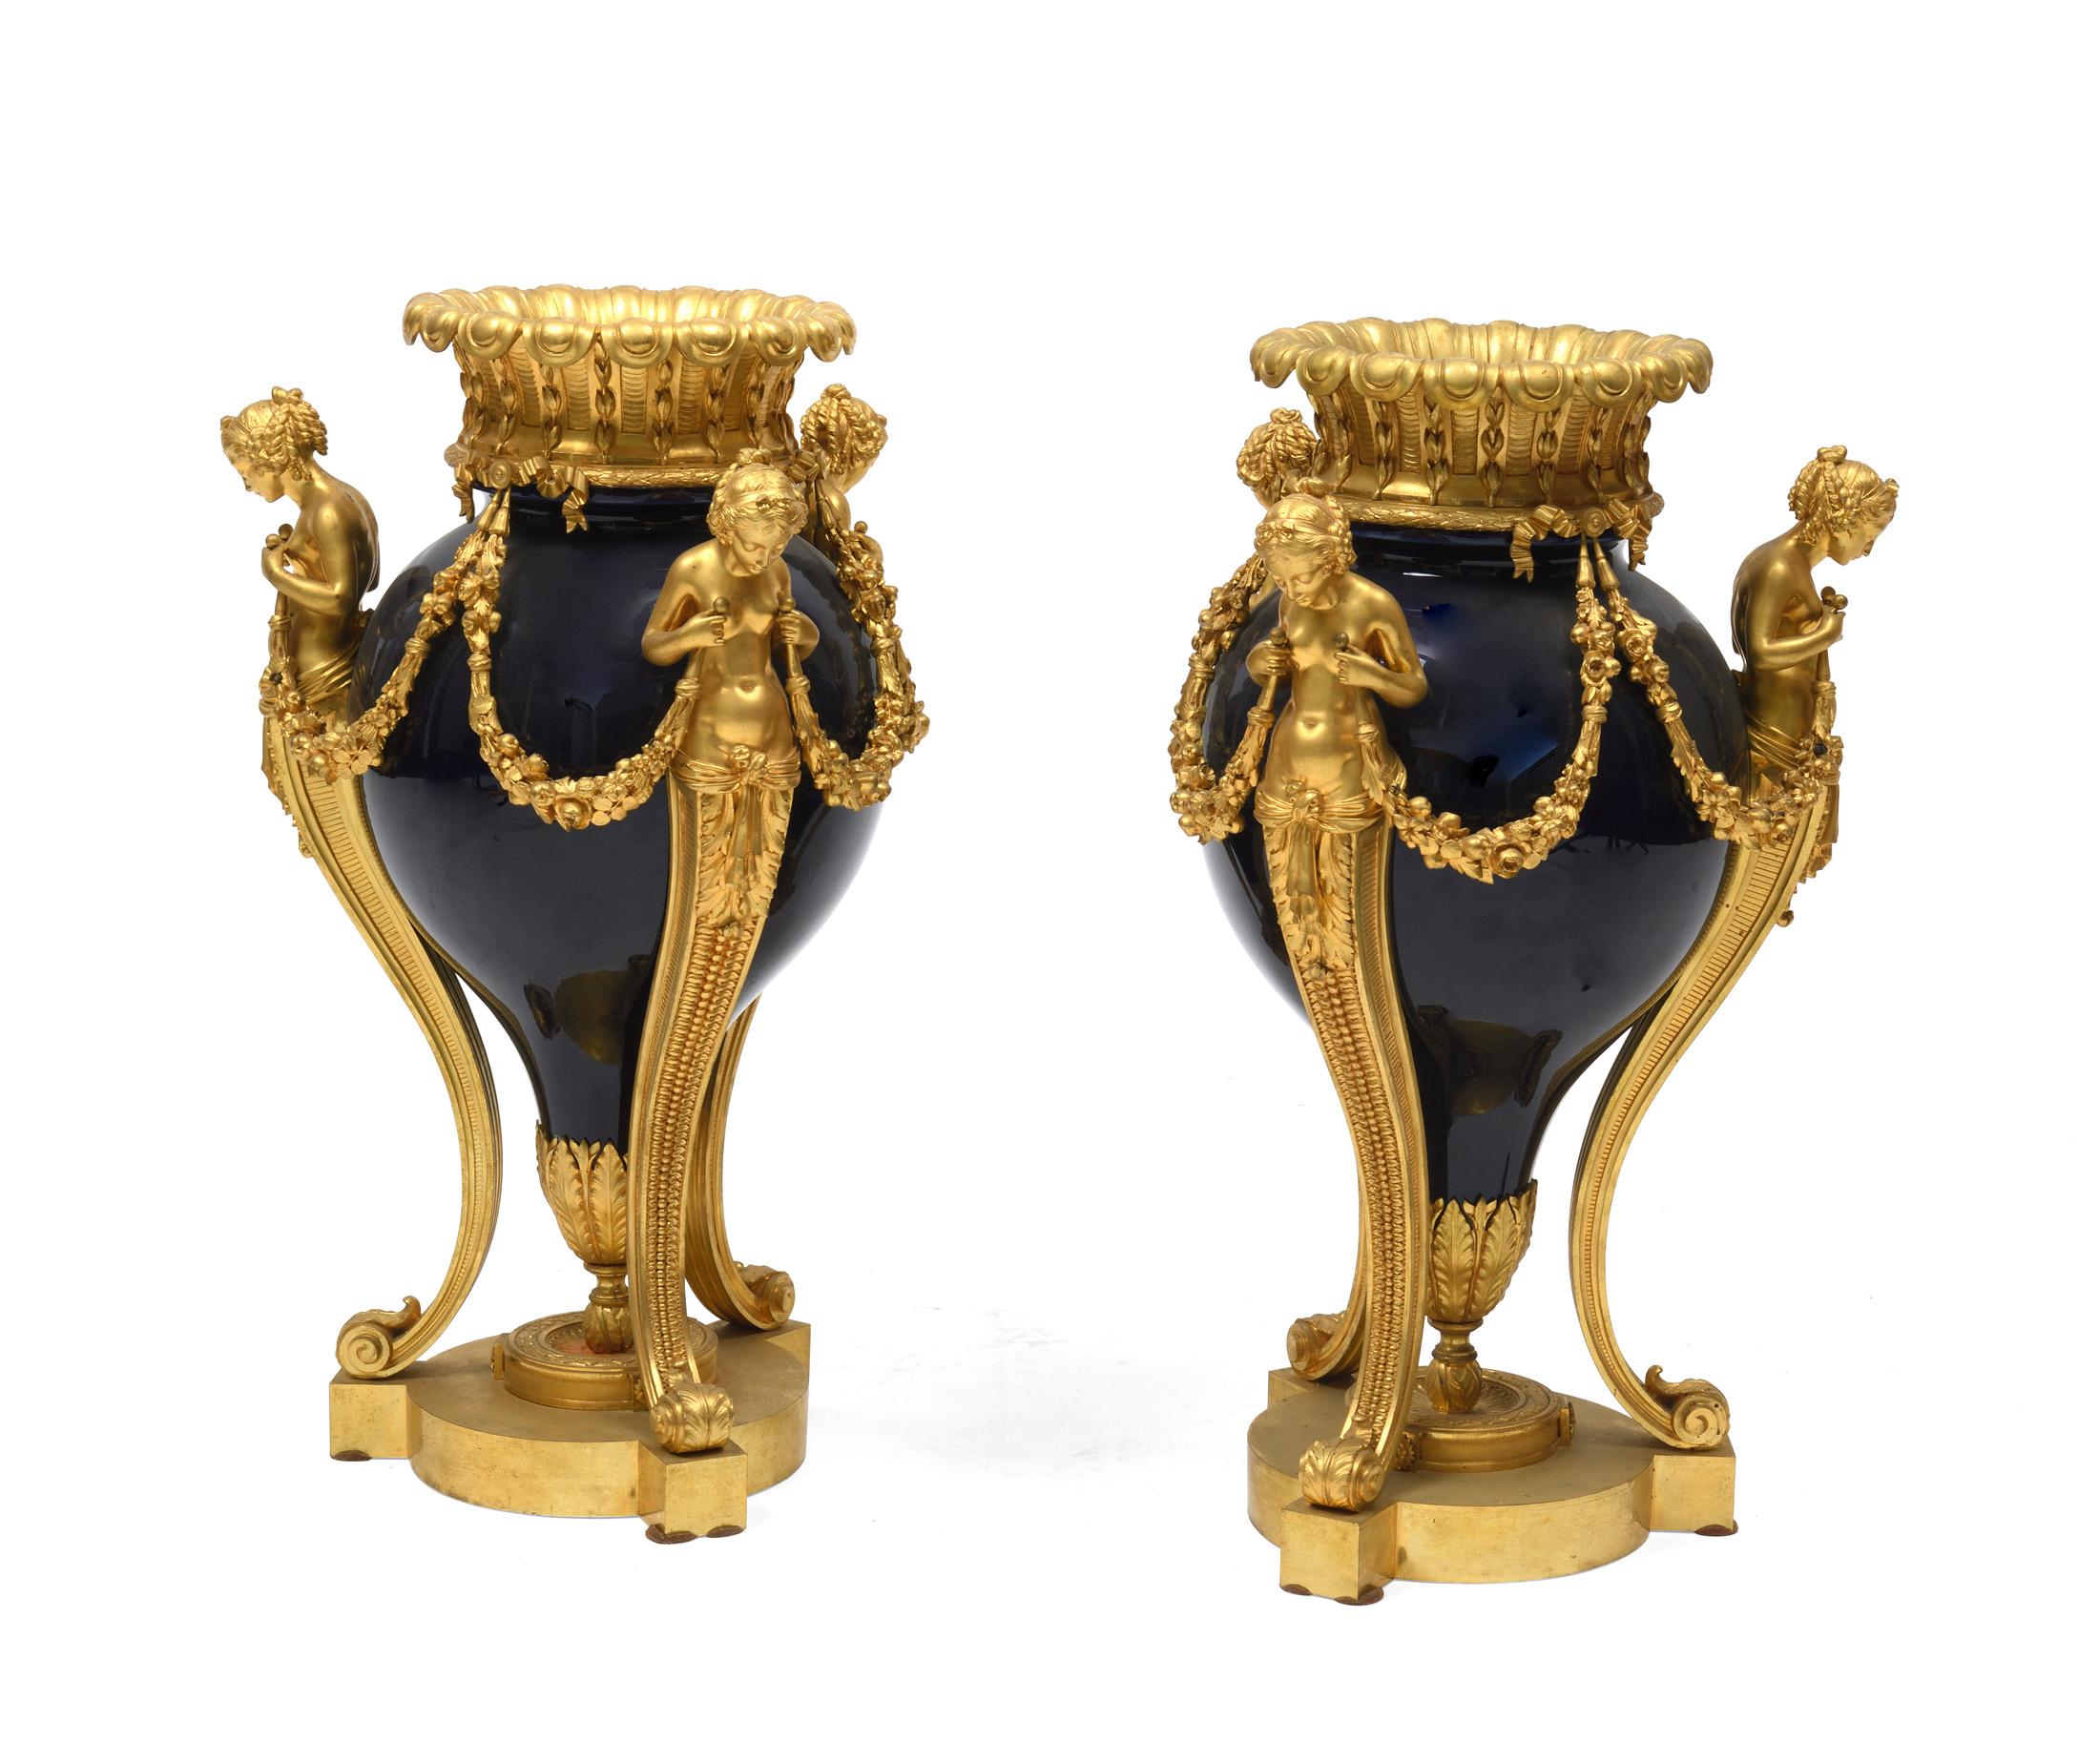 Paire de vases en bronze et porcelaine bleu cobalt avec têtes de femmes en bronze sur les côtés .le bronze de ces vases est d'une grande qualité Pas de signe mais ils ont été réalisés par un grand bronzier de l'époque parisienne.
Ce modèle est